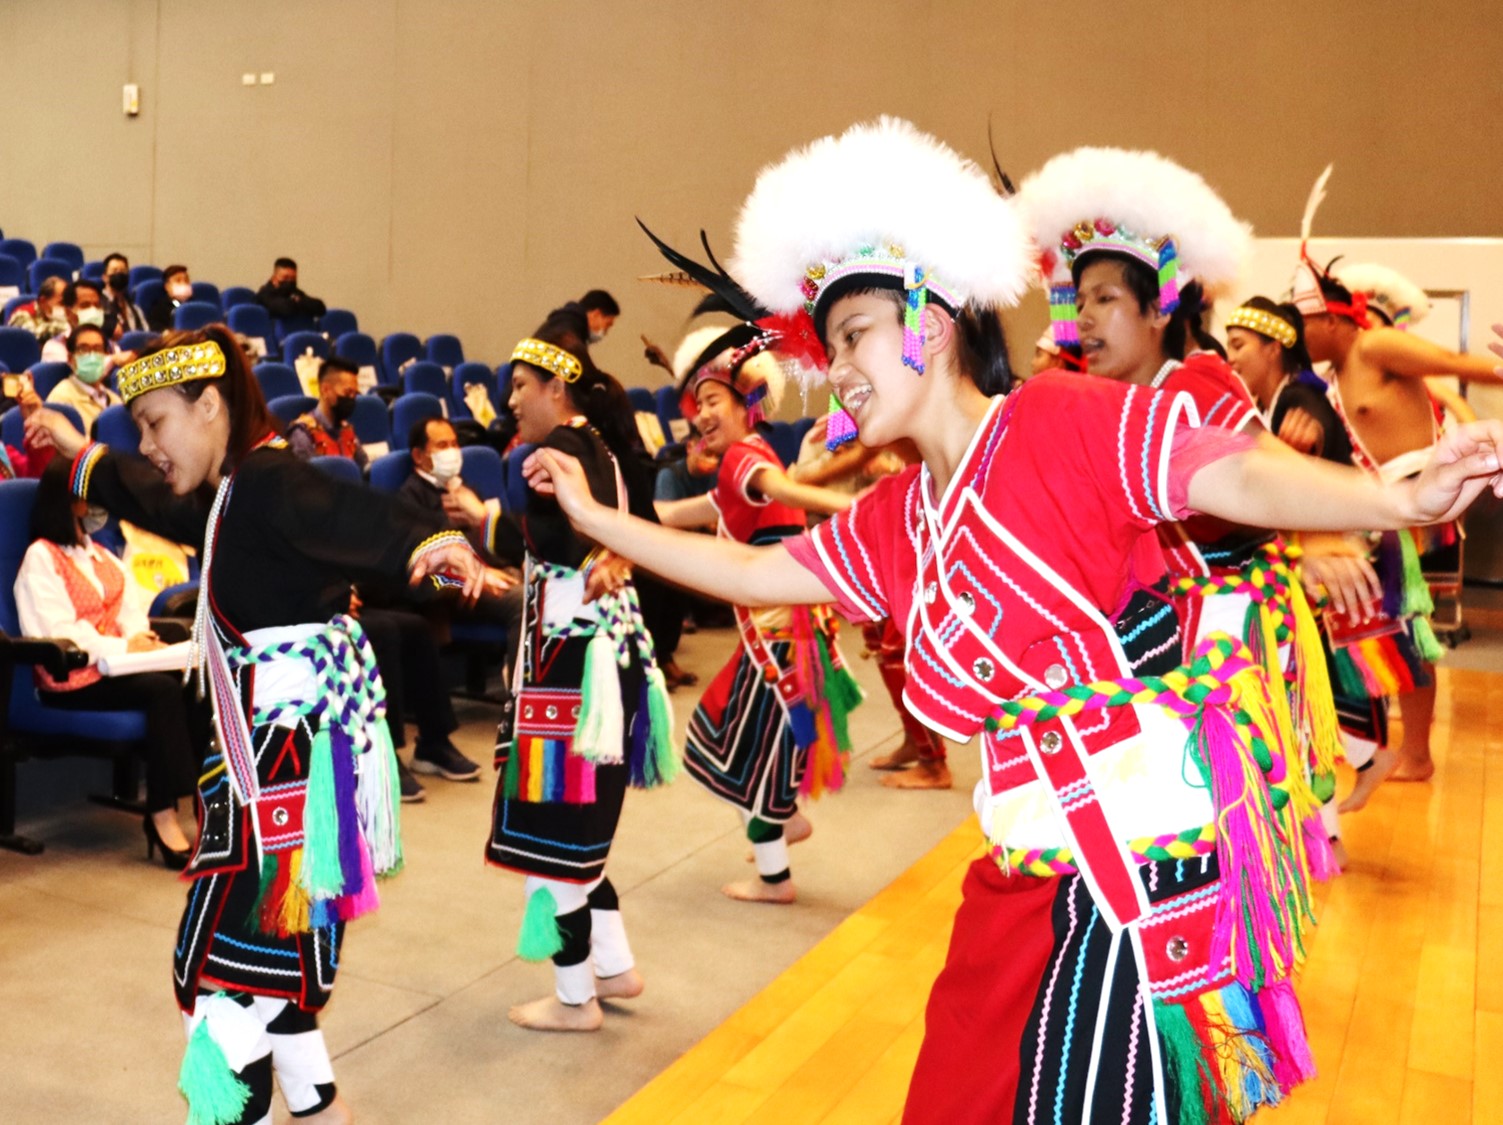 樹林高中原住民藝能班演繹花蓮縣光復鄉太巴塱部落豐年祭儀式。